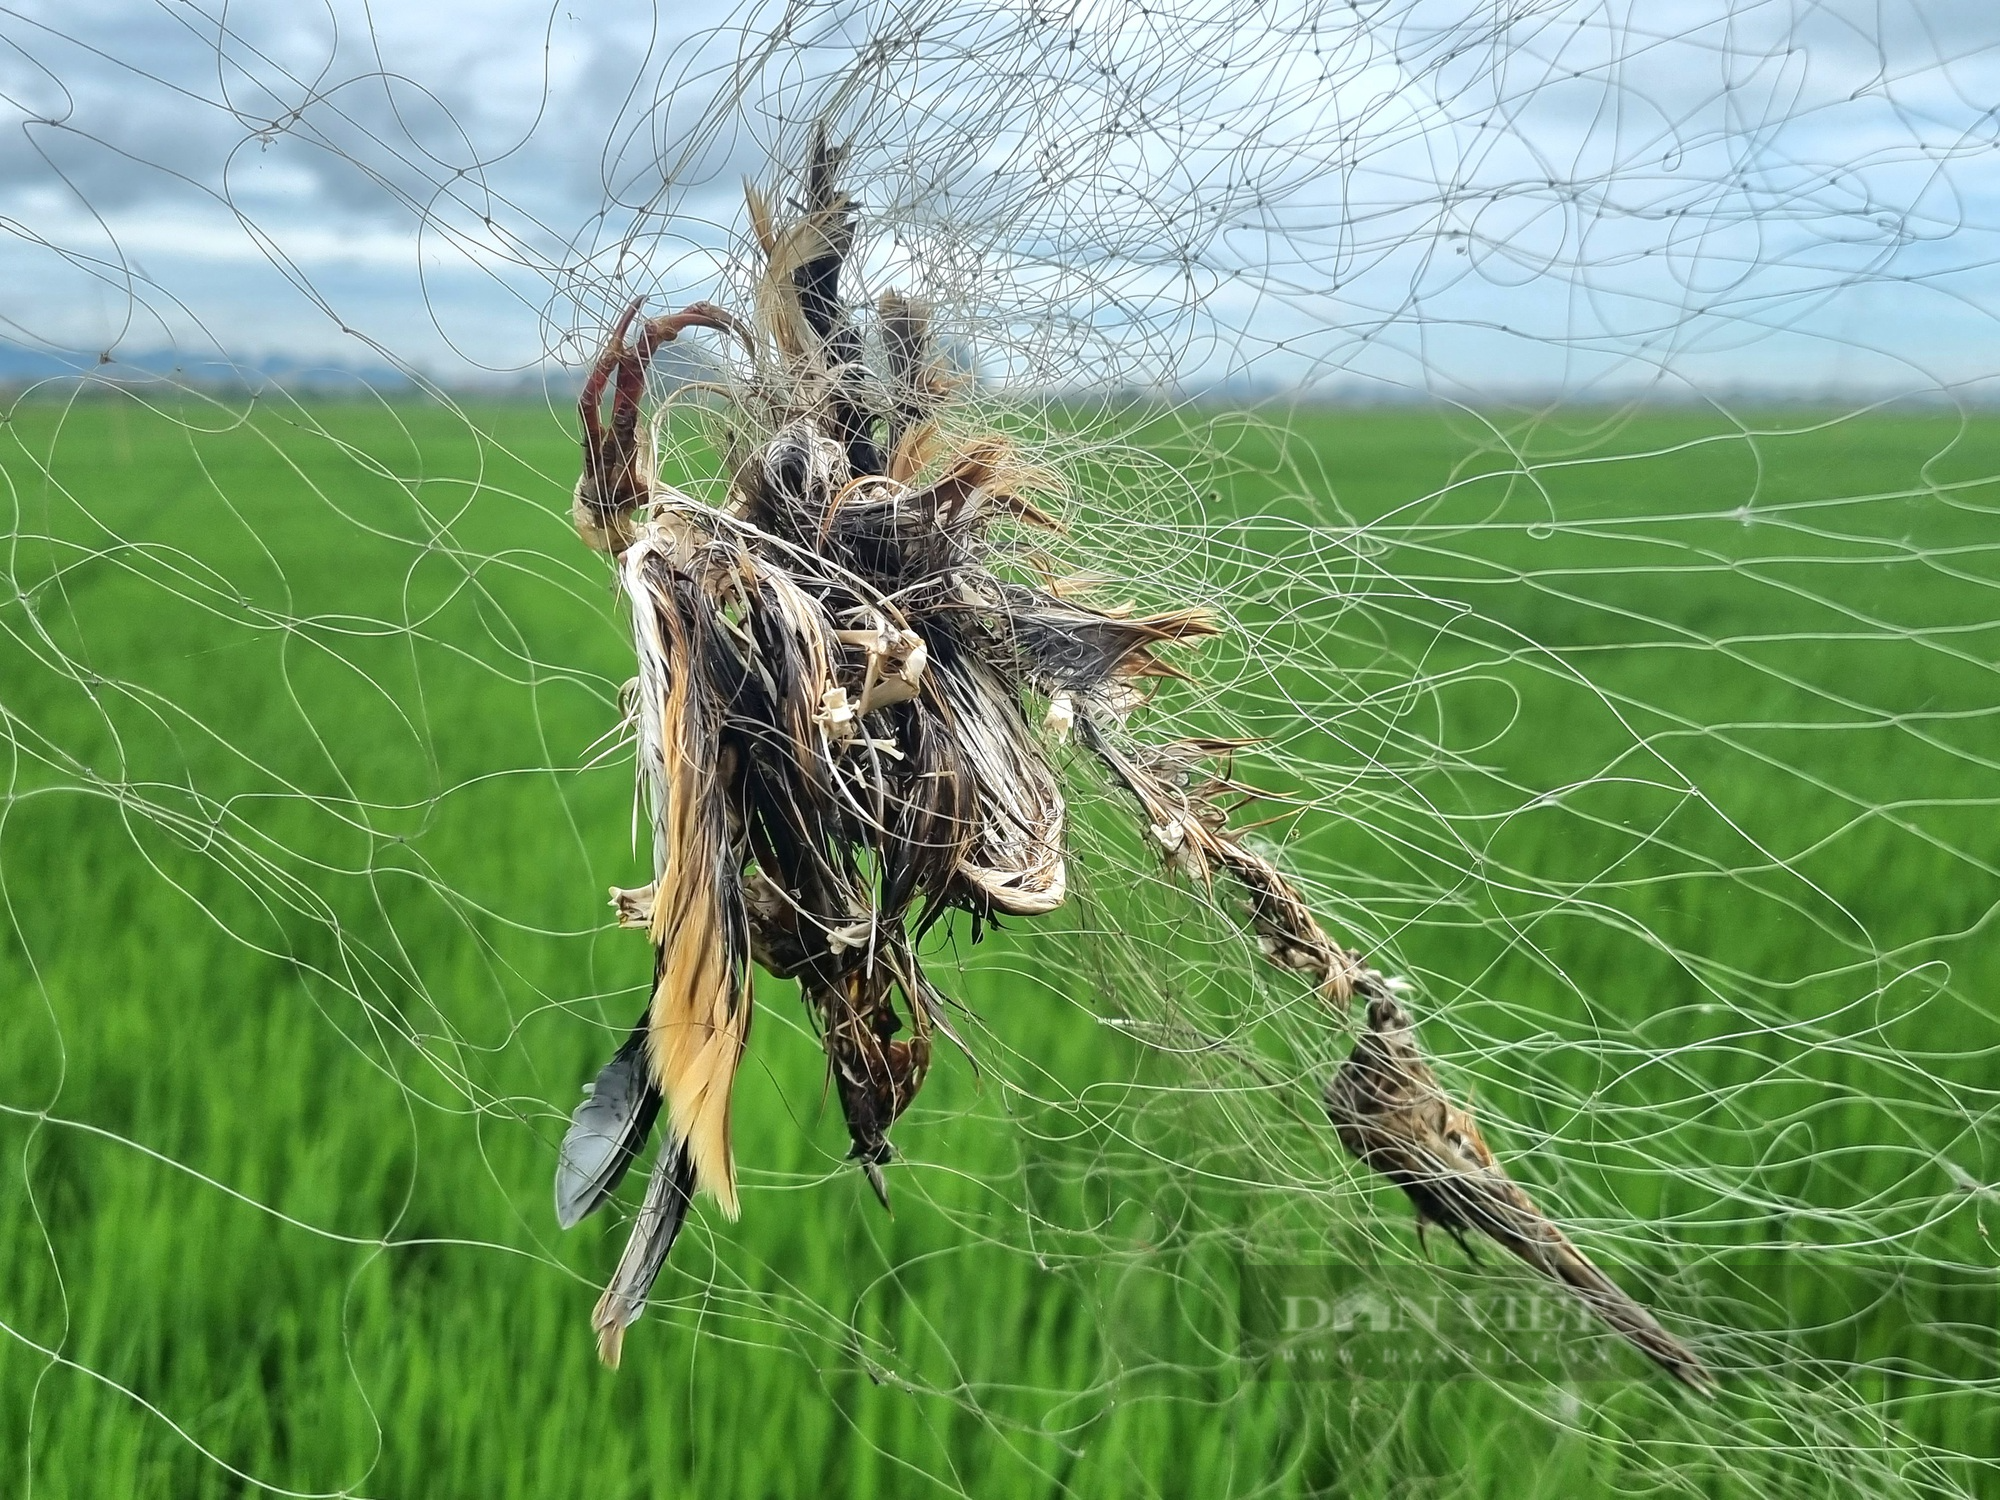 Ám ảnh chim trời bị “hành quyết” lơ lửng giữa cánh đồng lúa ở Ninh Bình - Ảnh 2.